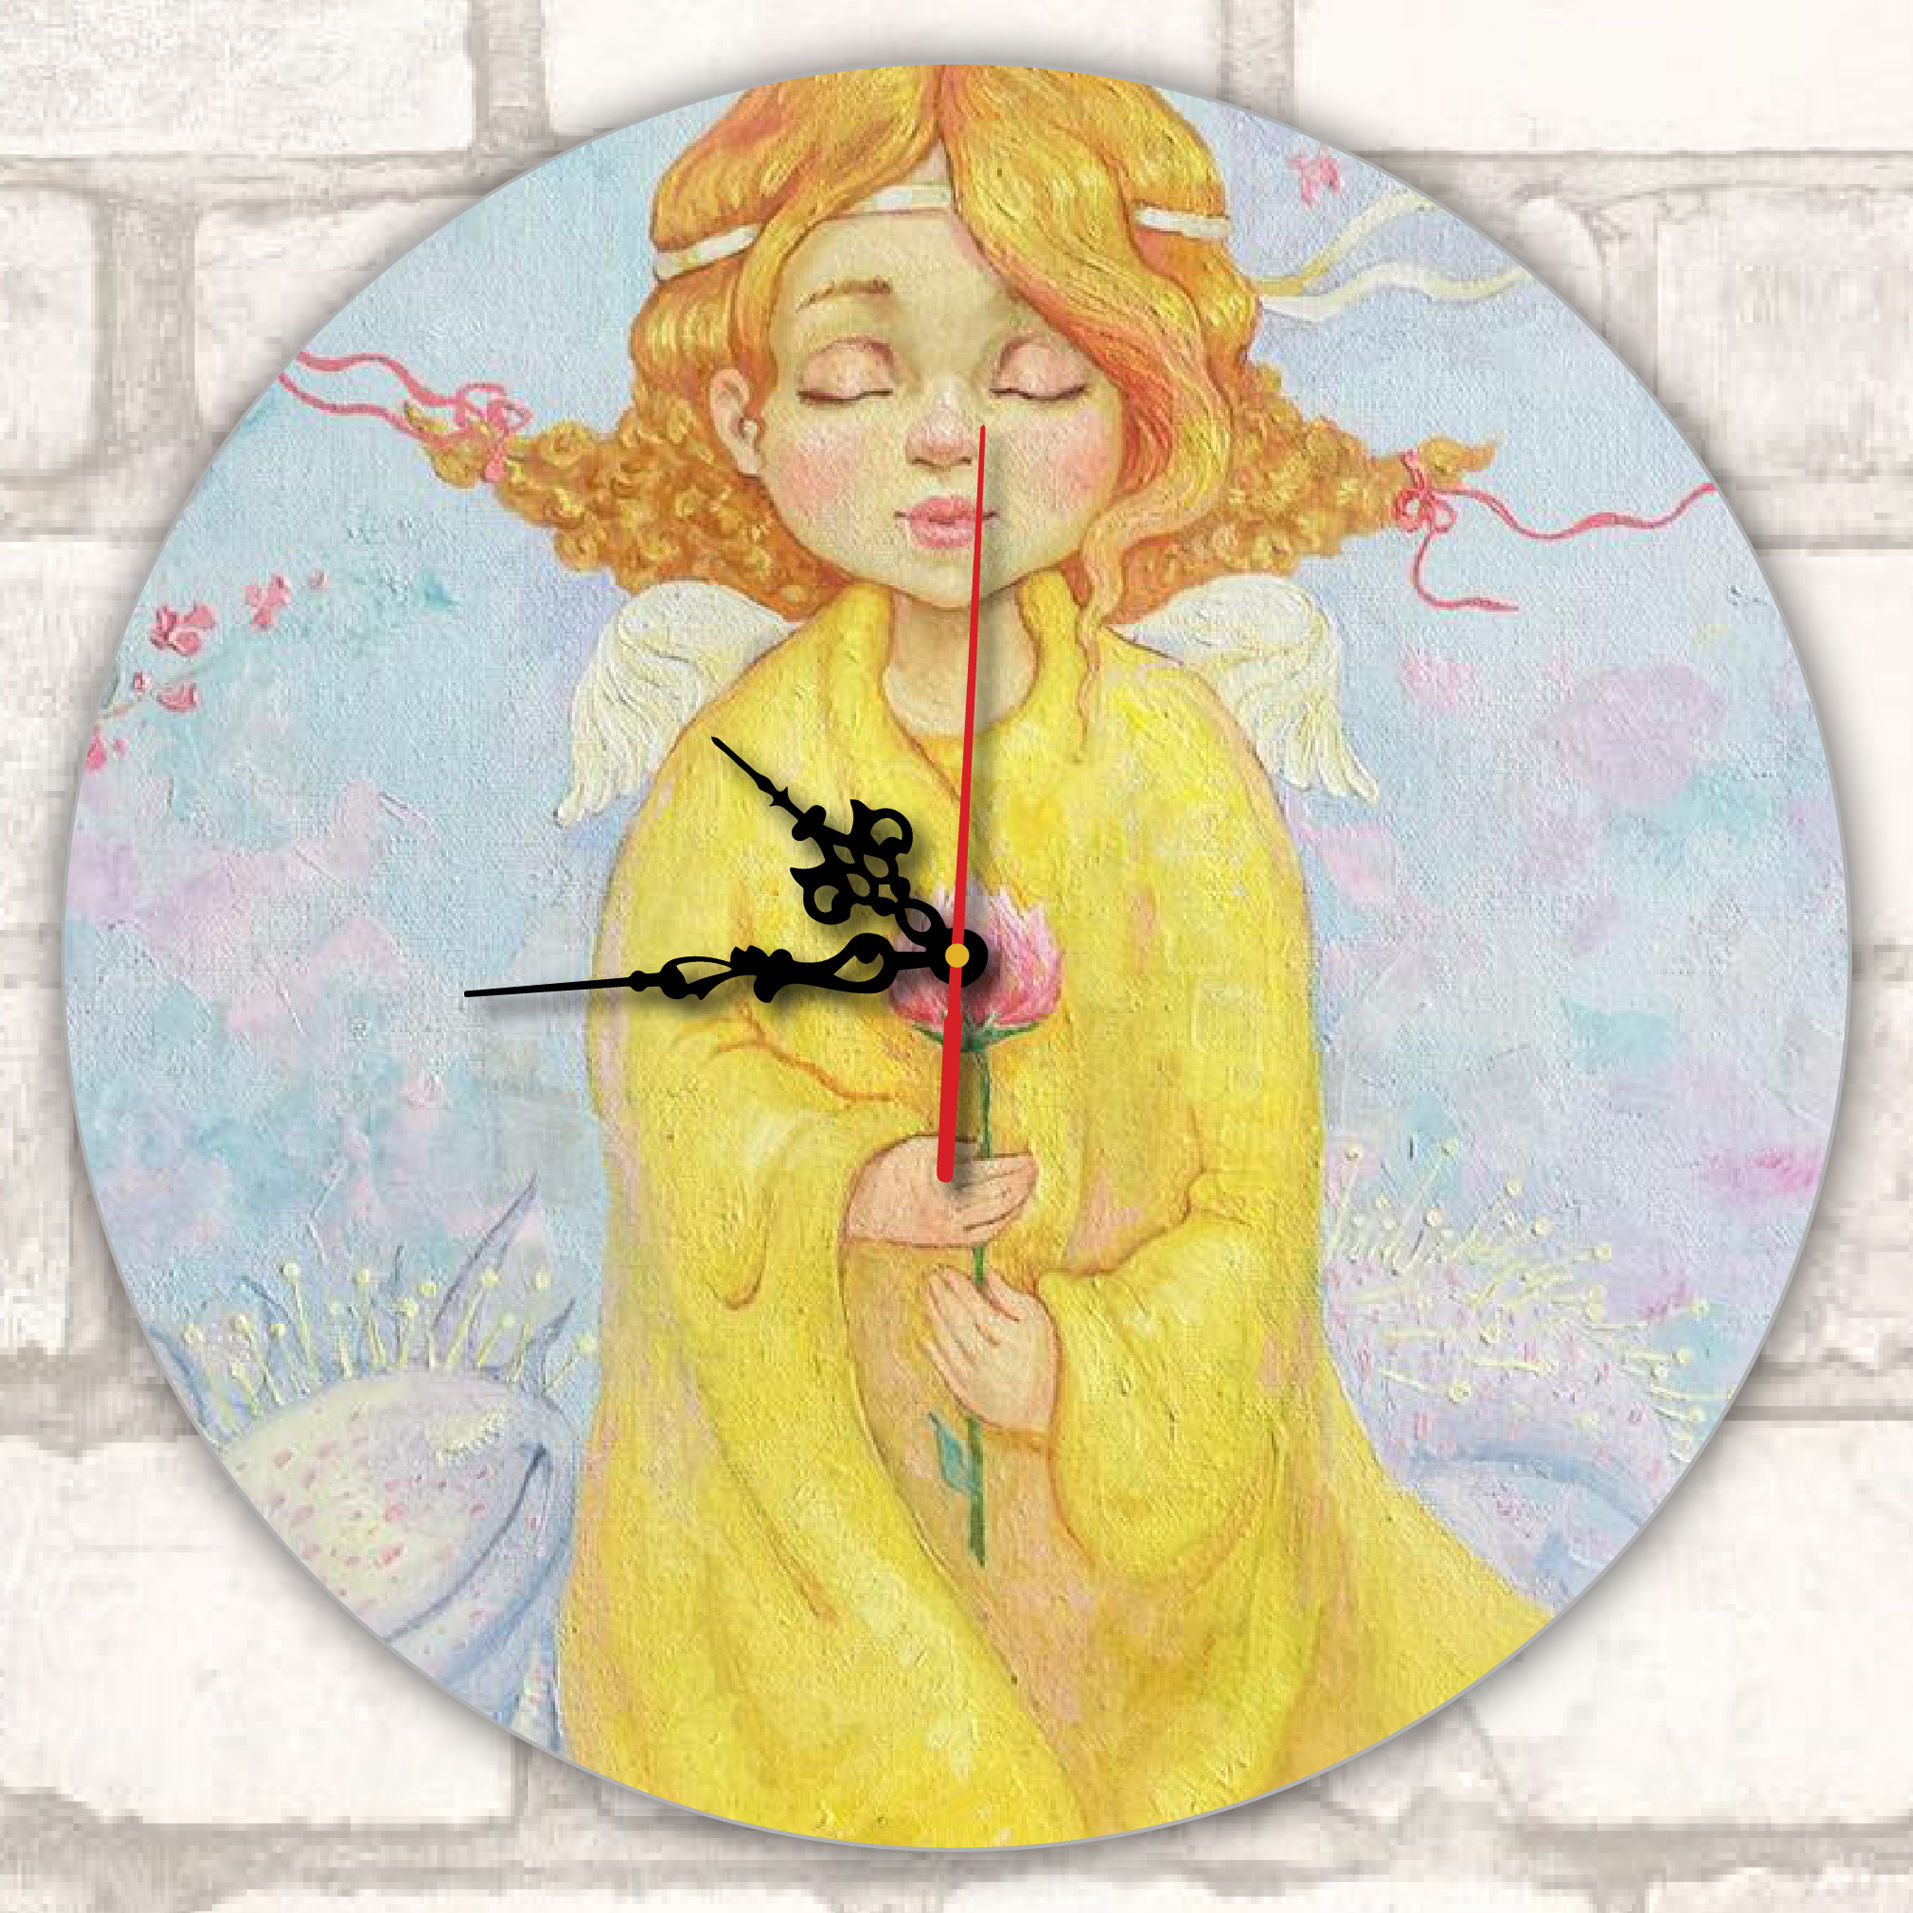 Impression sur horloge murale ronde avec aiguilles noires (32 cm)